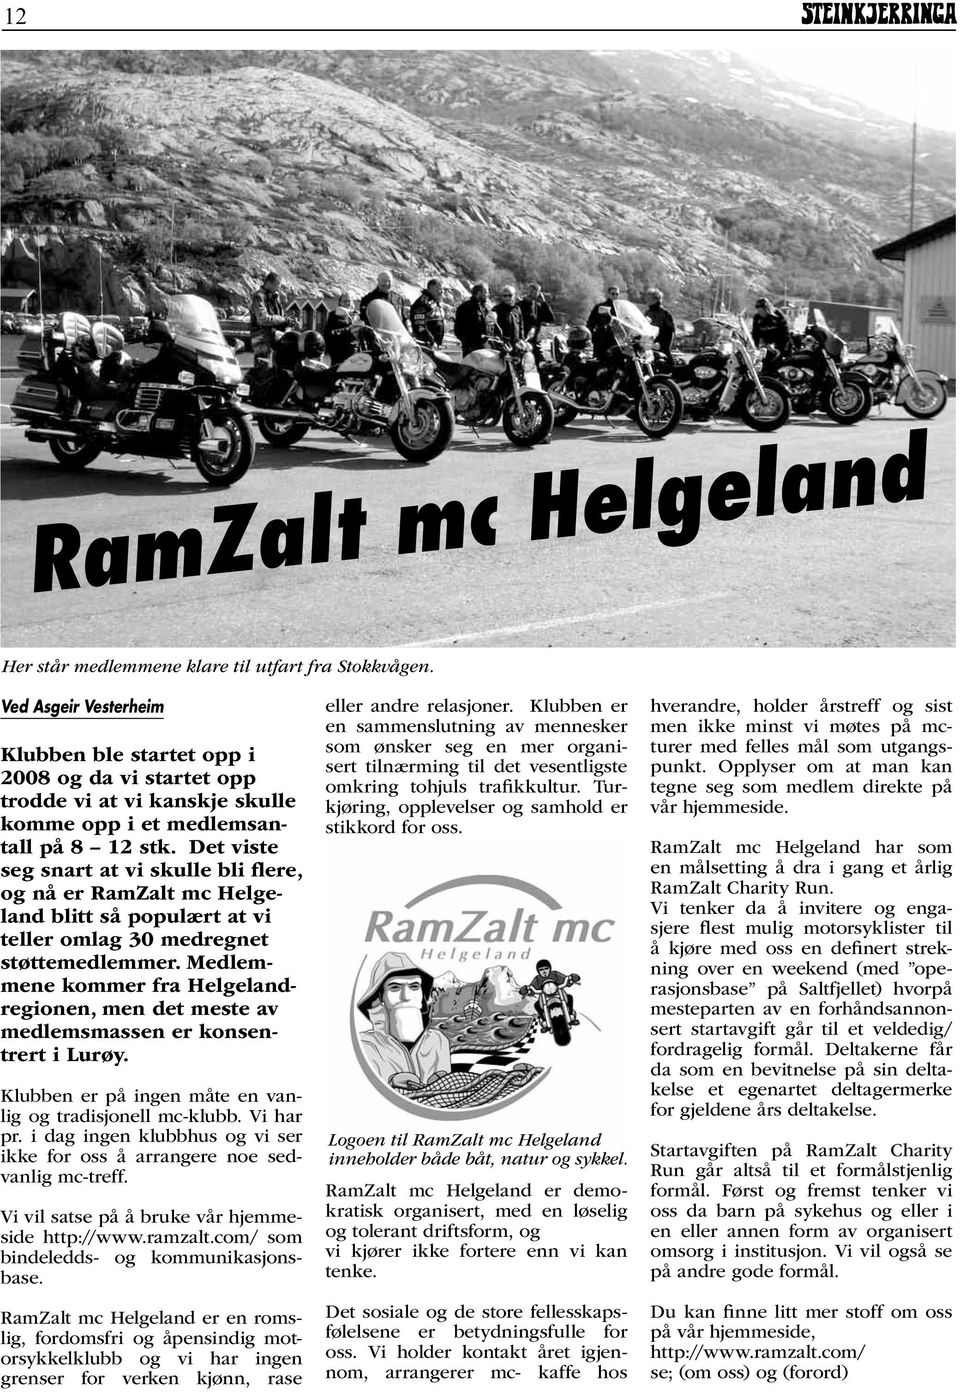 Det viste seg snart at vi skulle bli flere, og nå er RamZalt mc Helgeland blitt så populært at vi teller omlag 30 medregnet støttemedlemmer.